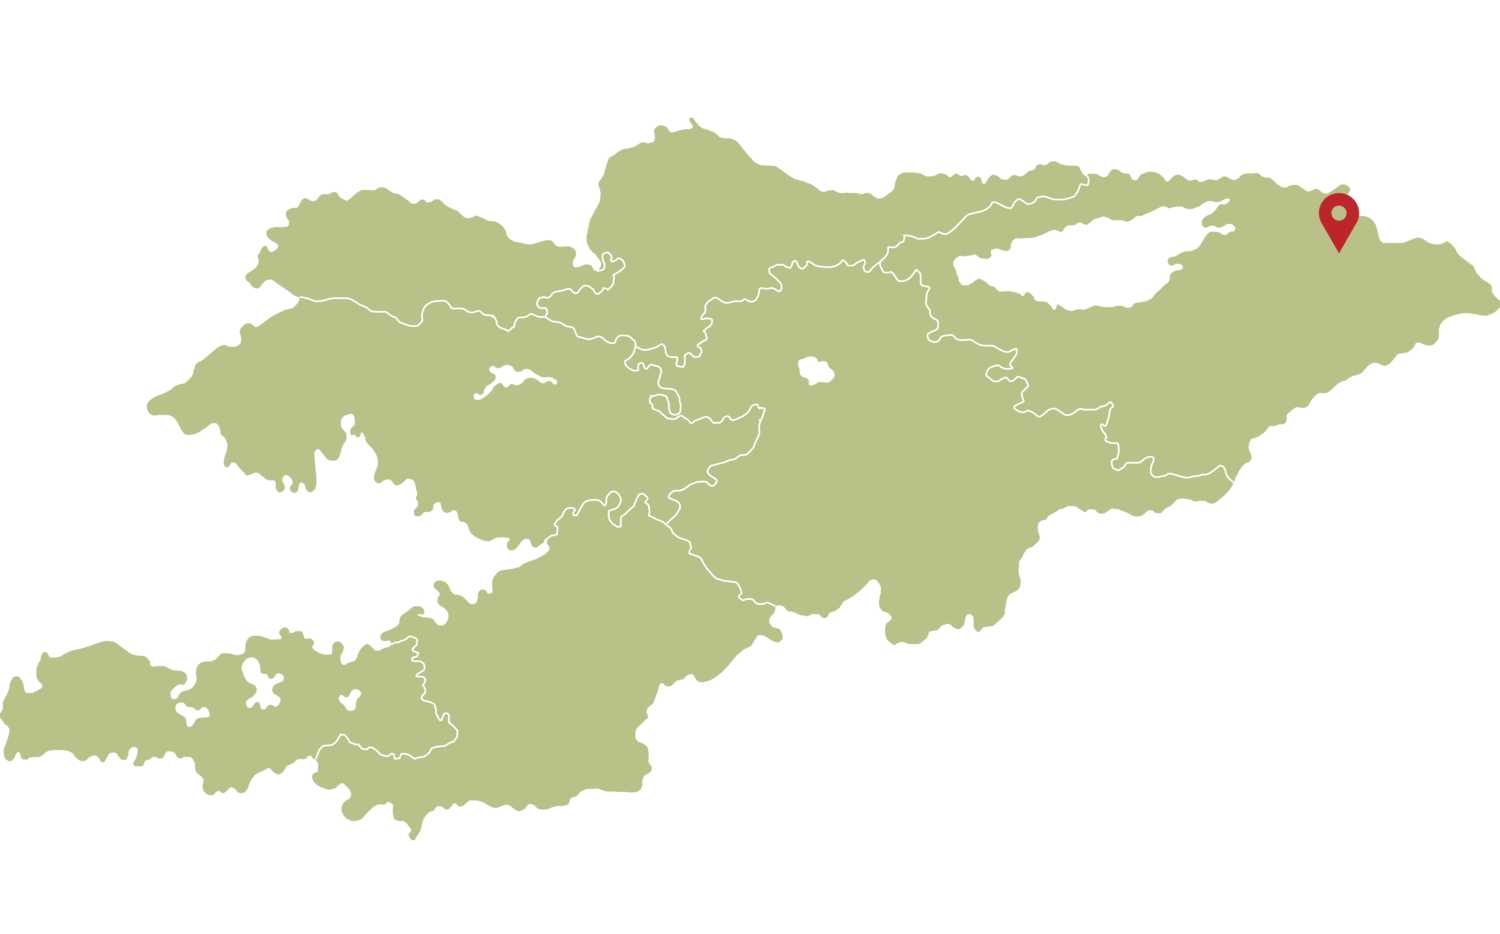 Location of Jyrgalan valley